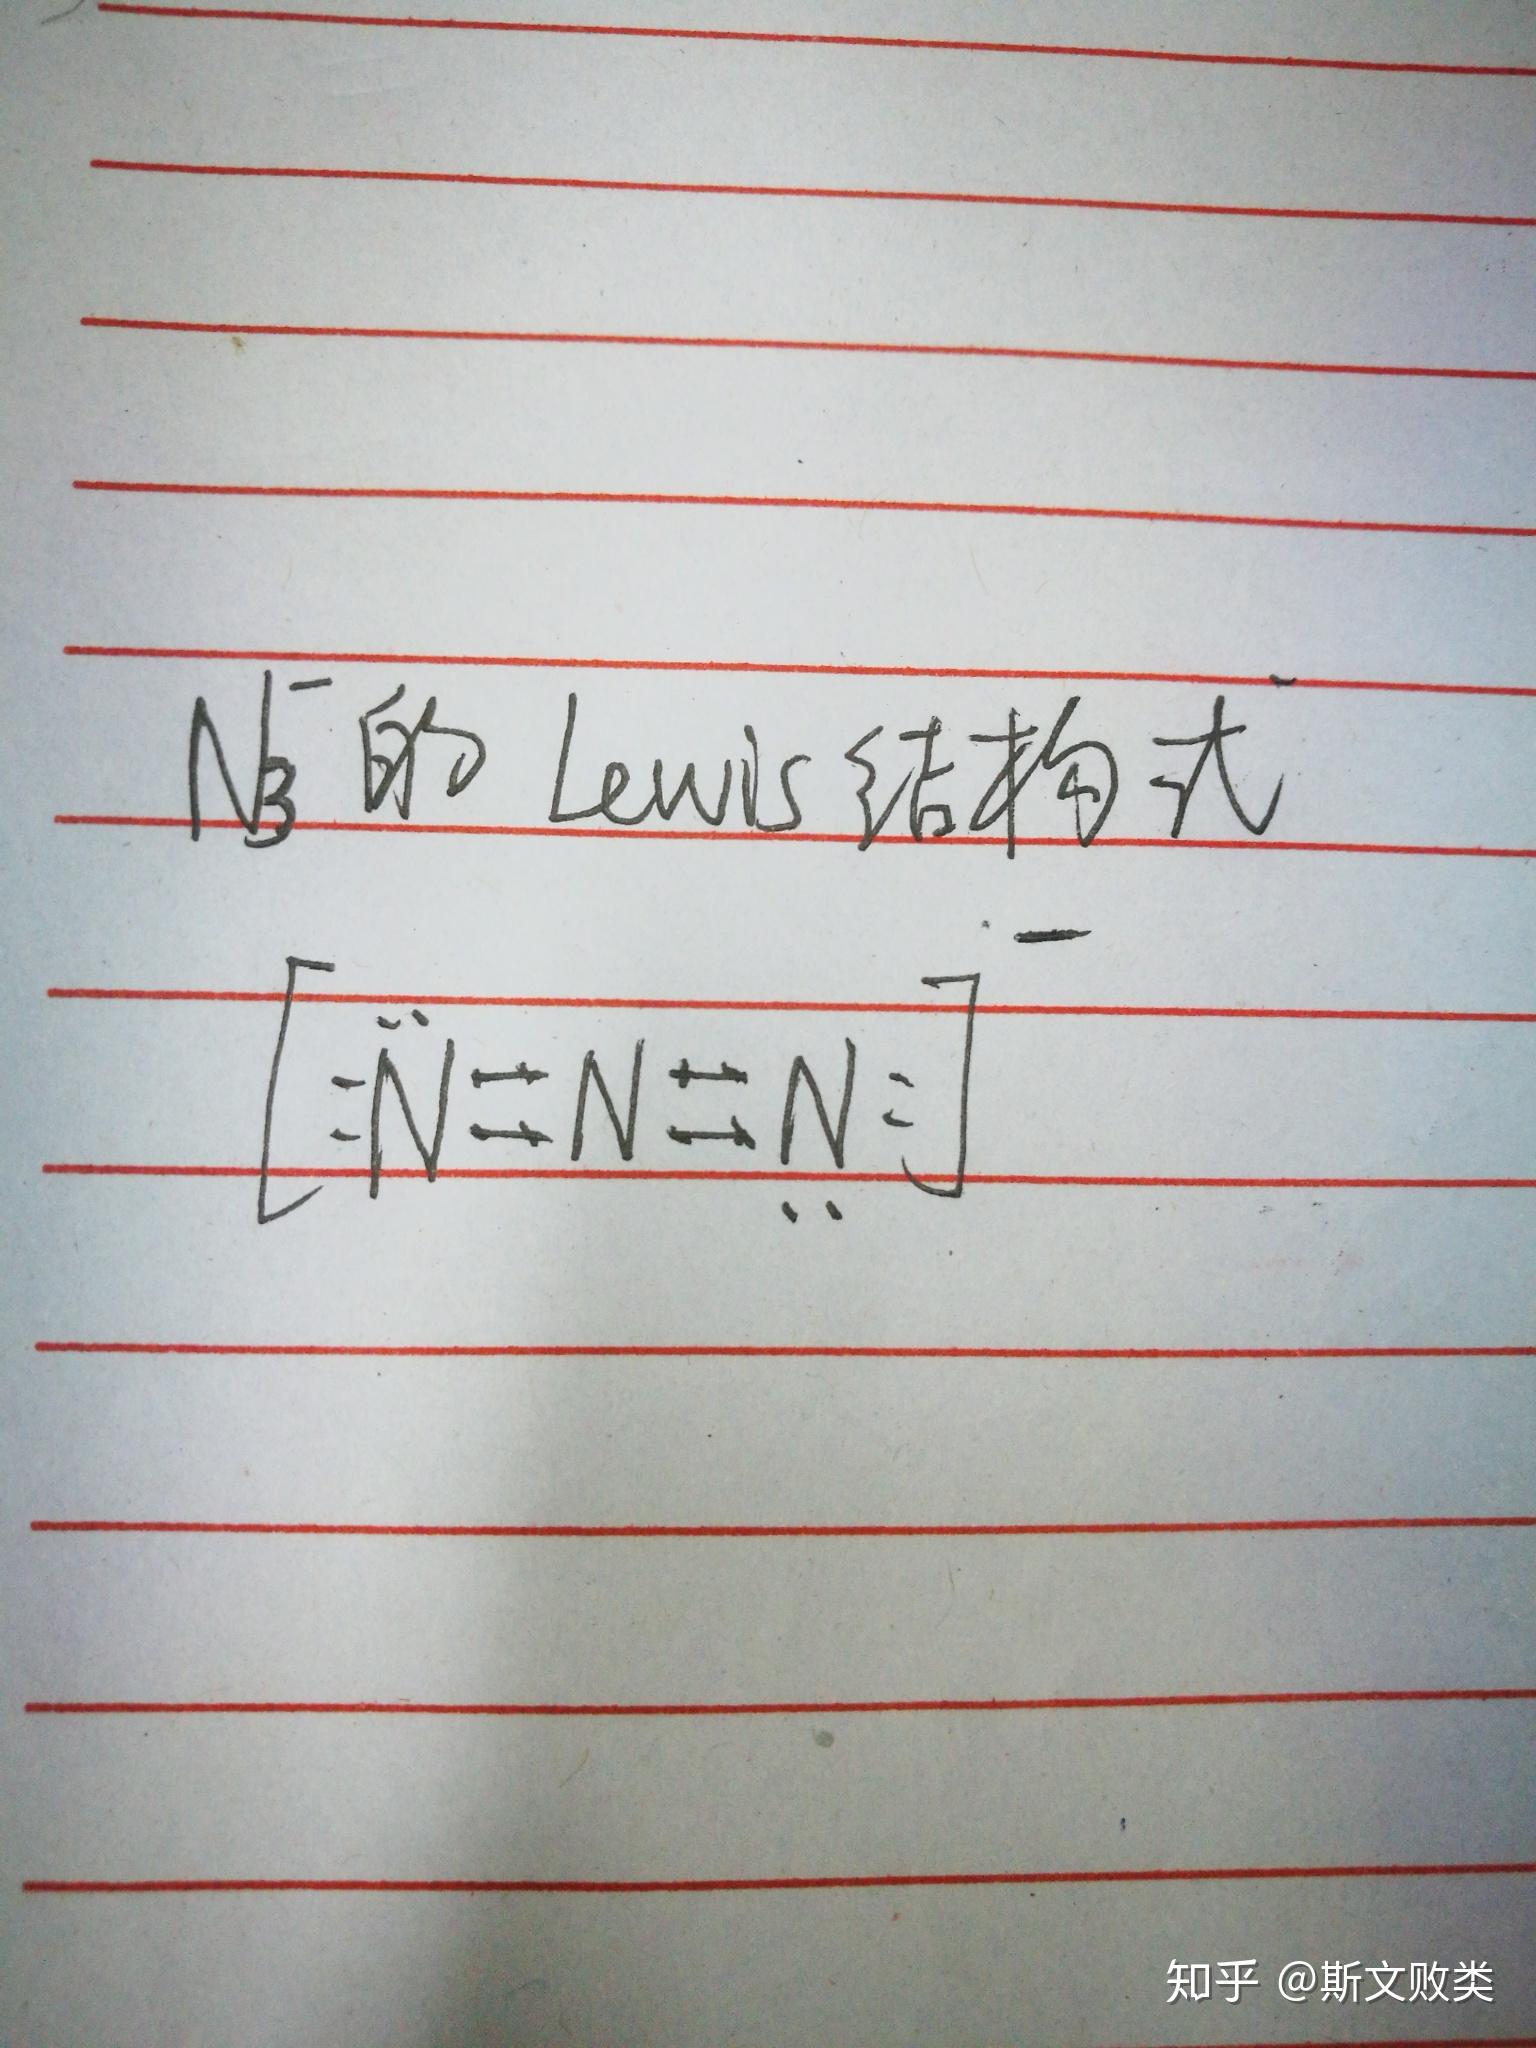 请问全氮阴离子的lewis结构式怎么写? 